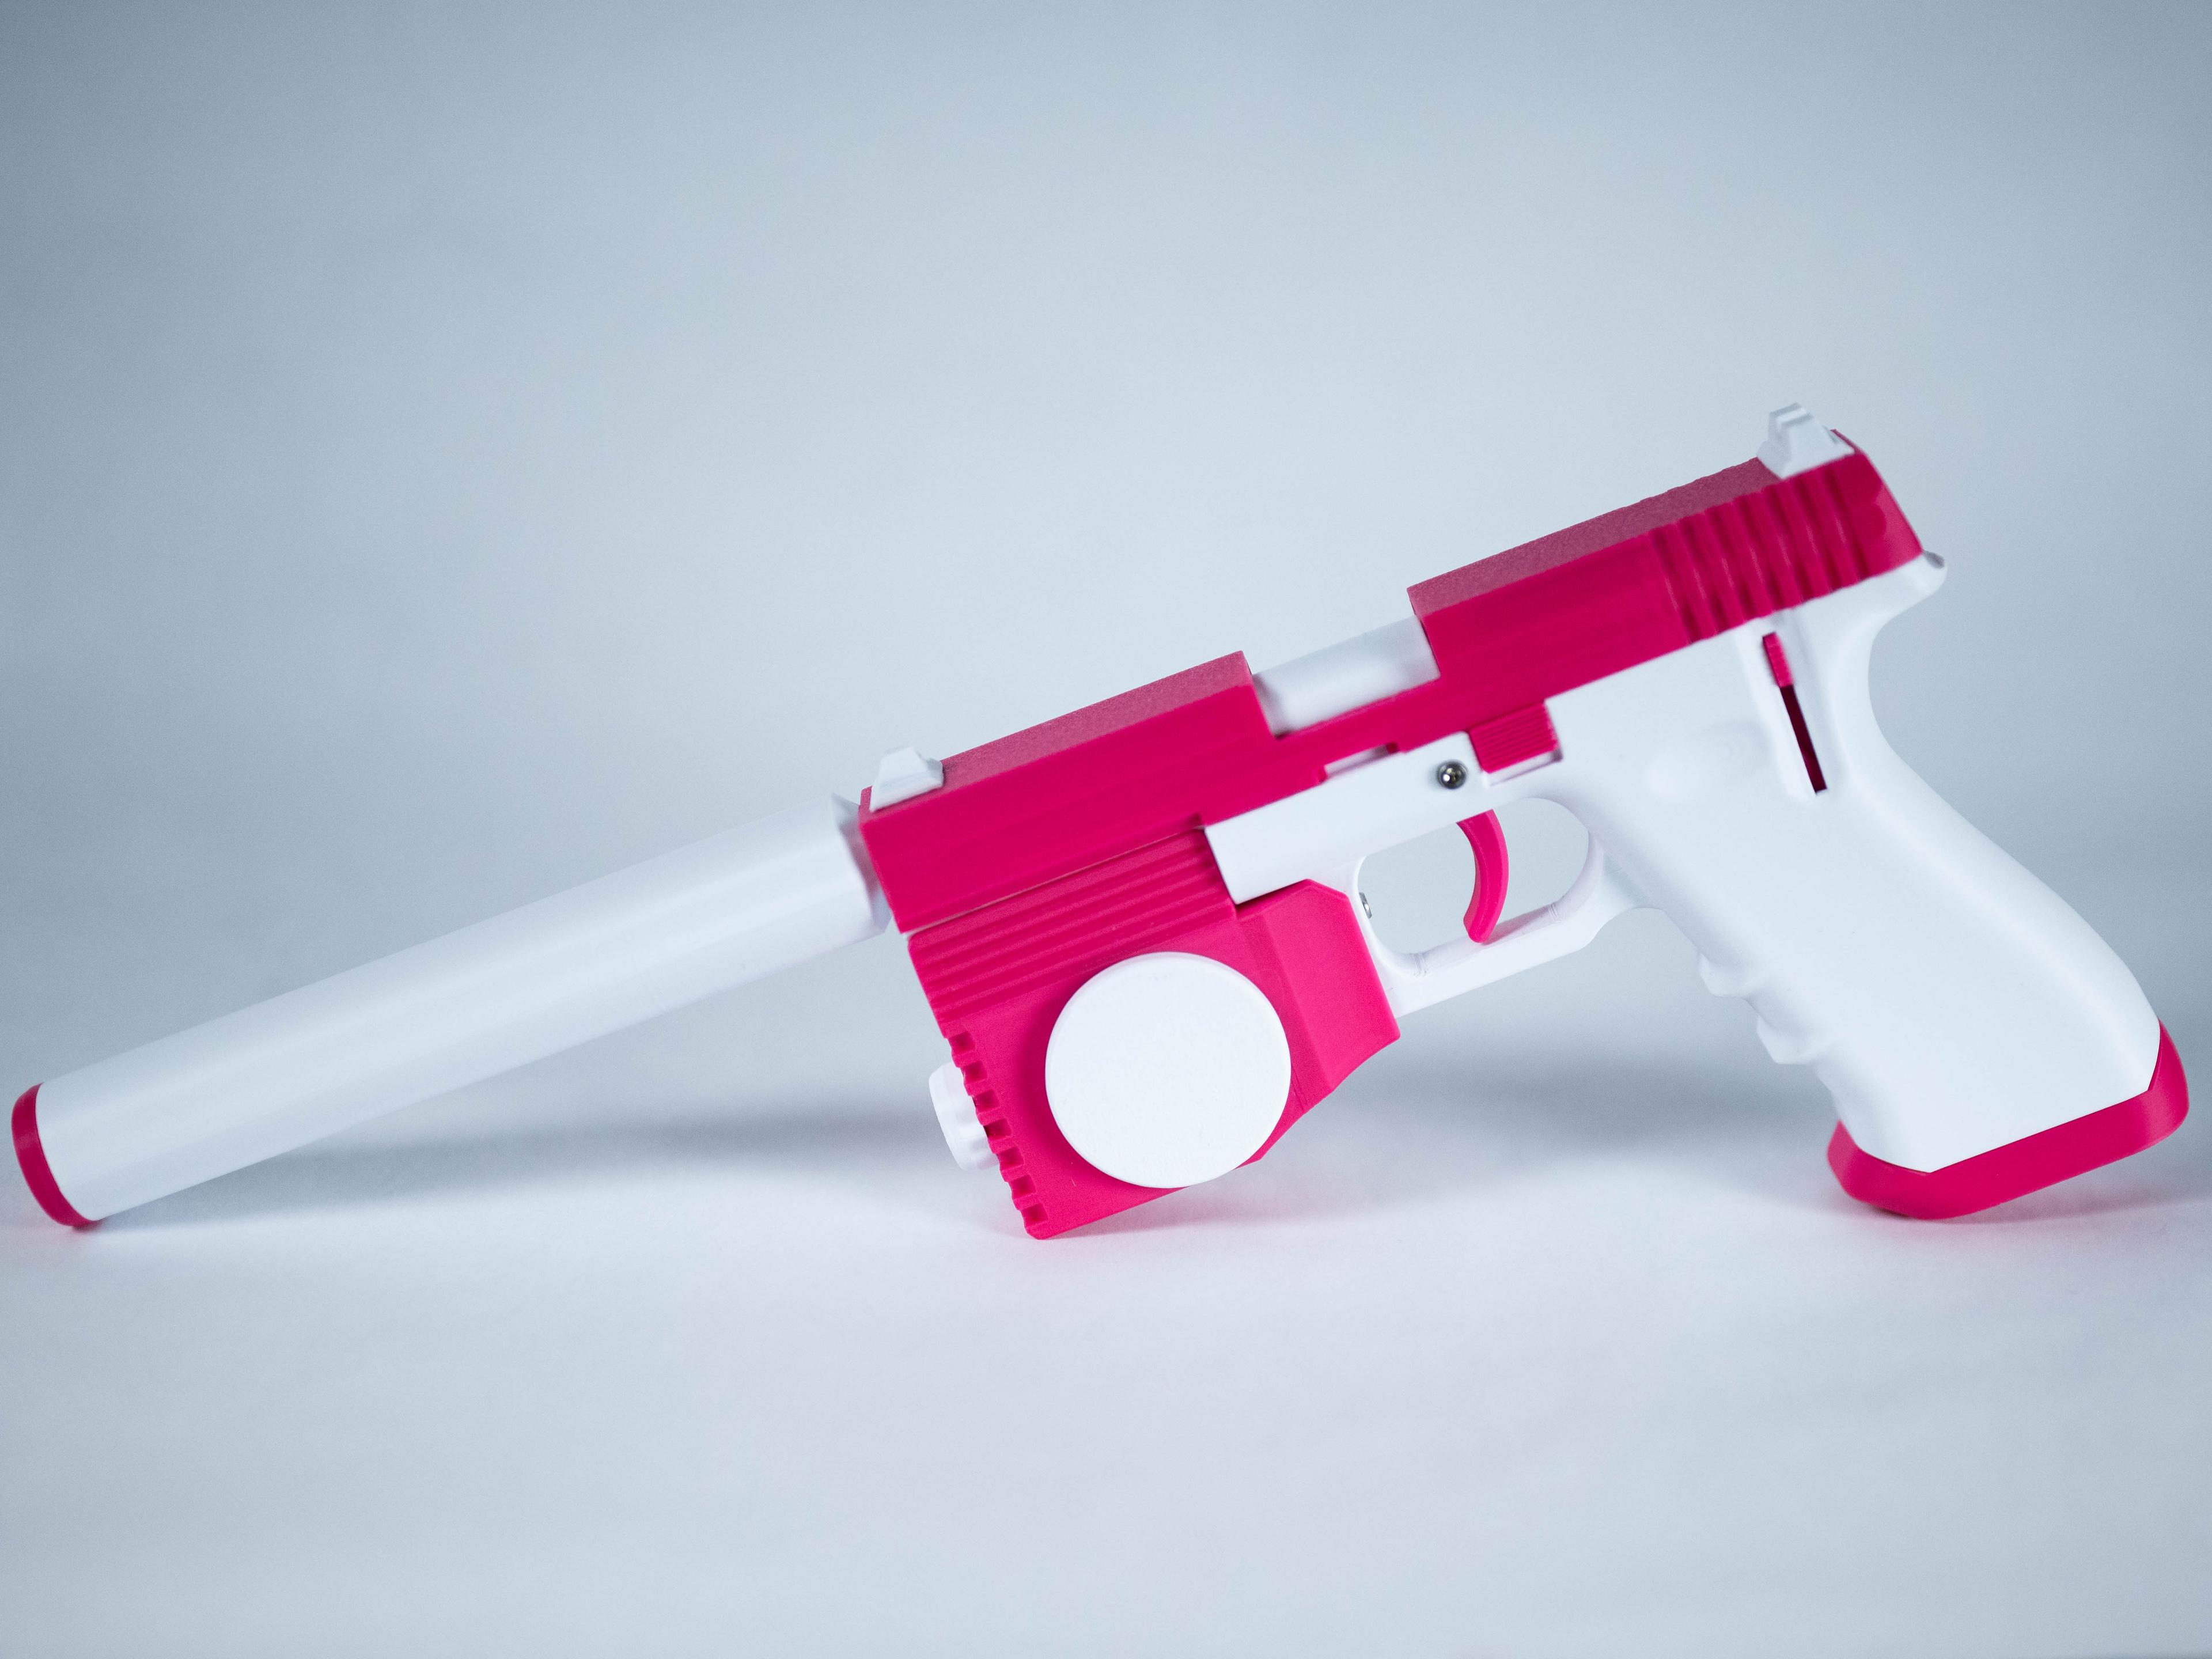 SMOCOM - Mental Health Defense Pistol (Updated V1.1) 3d model